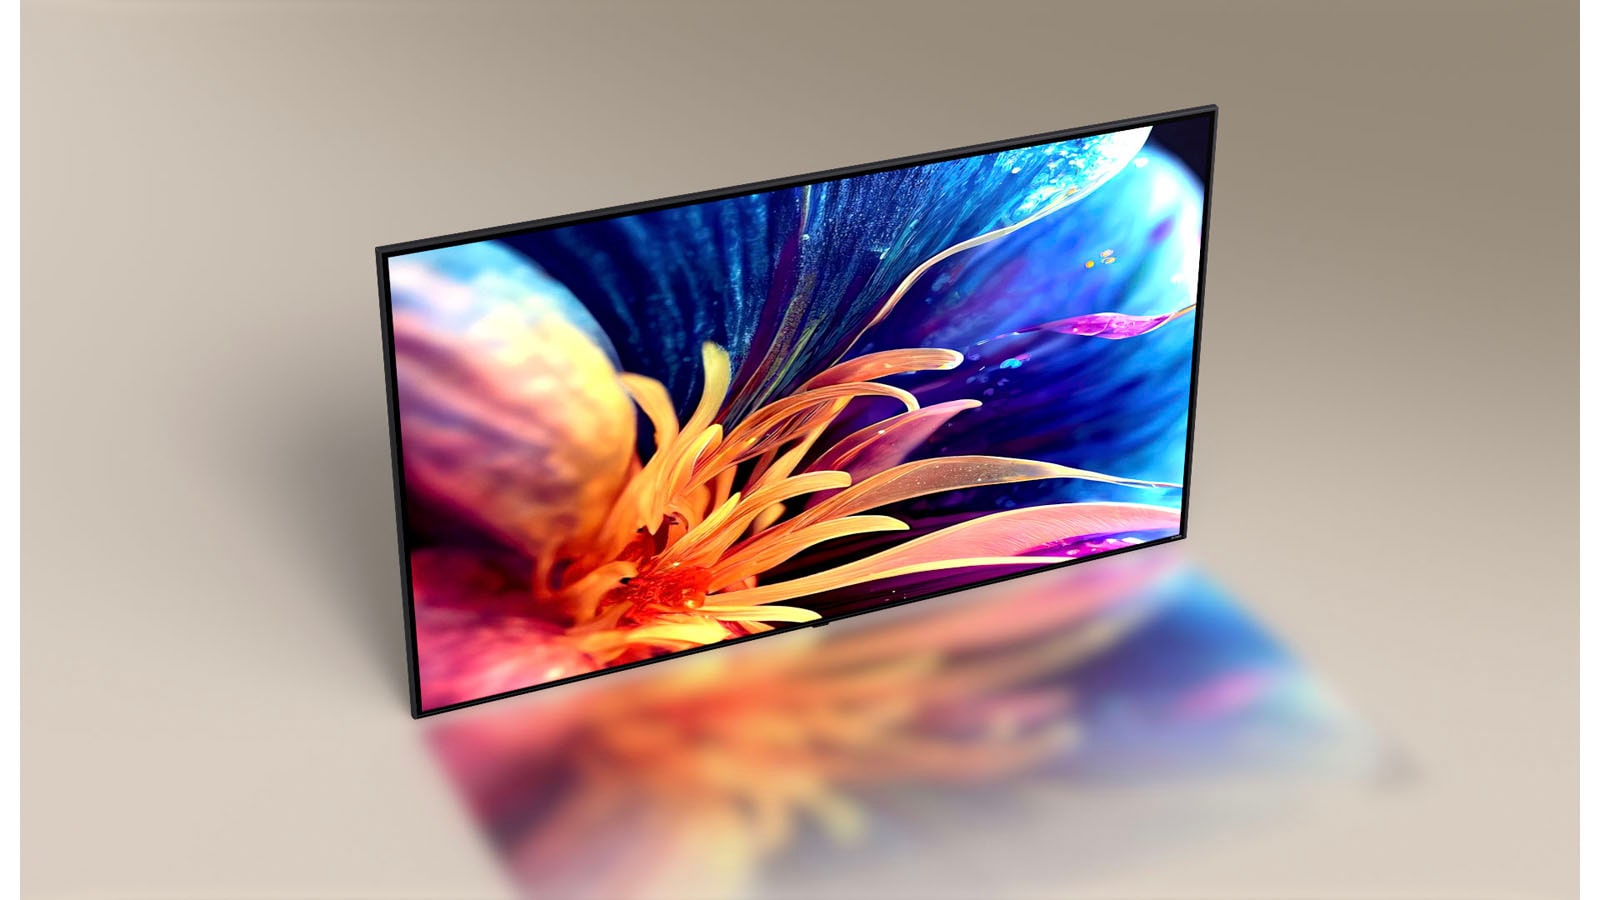 從鳥瞰相機角度俯視超薄型 LG TV 相機角度投影片顯示電視的正面，透露出五顏六色花卉放大的圖片。